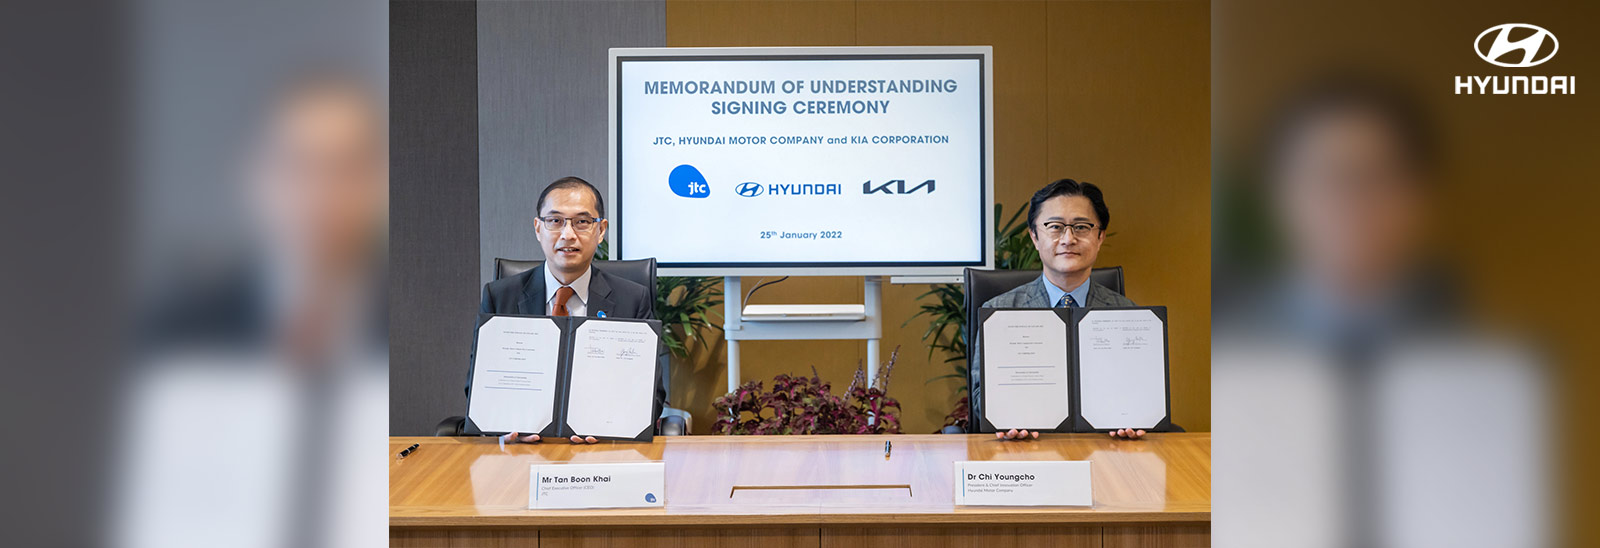 Ejecutivos de Hyundai y JTC mostrando carpeta con acuerdo